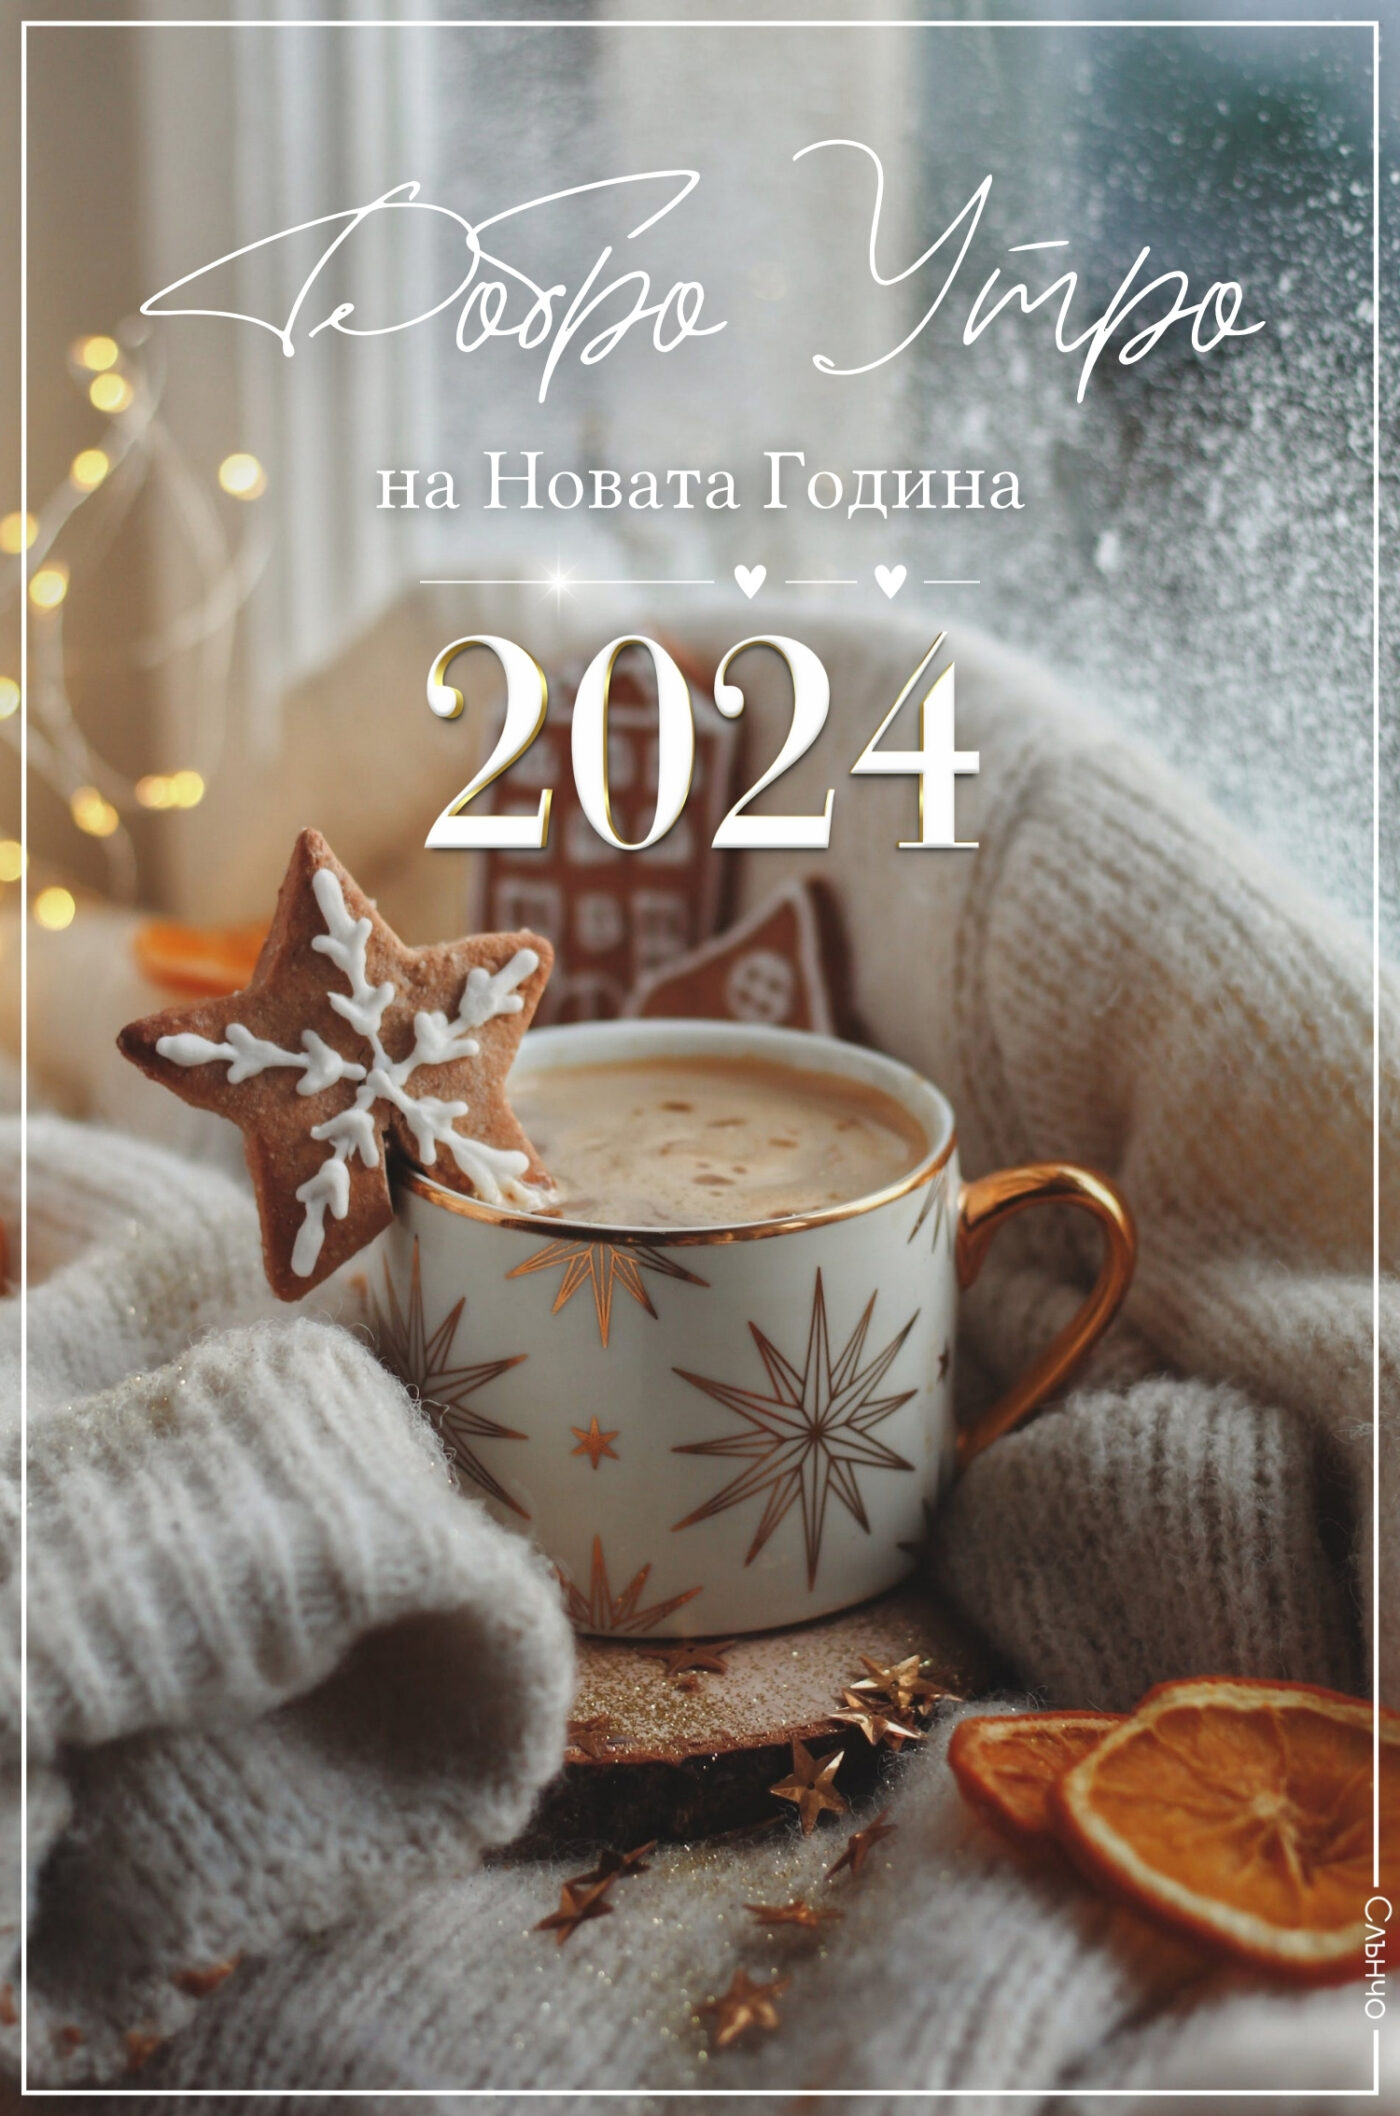 Добро Утро на Новата година 2024, Новогодишни картички 2024, честита нова година, слънчо